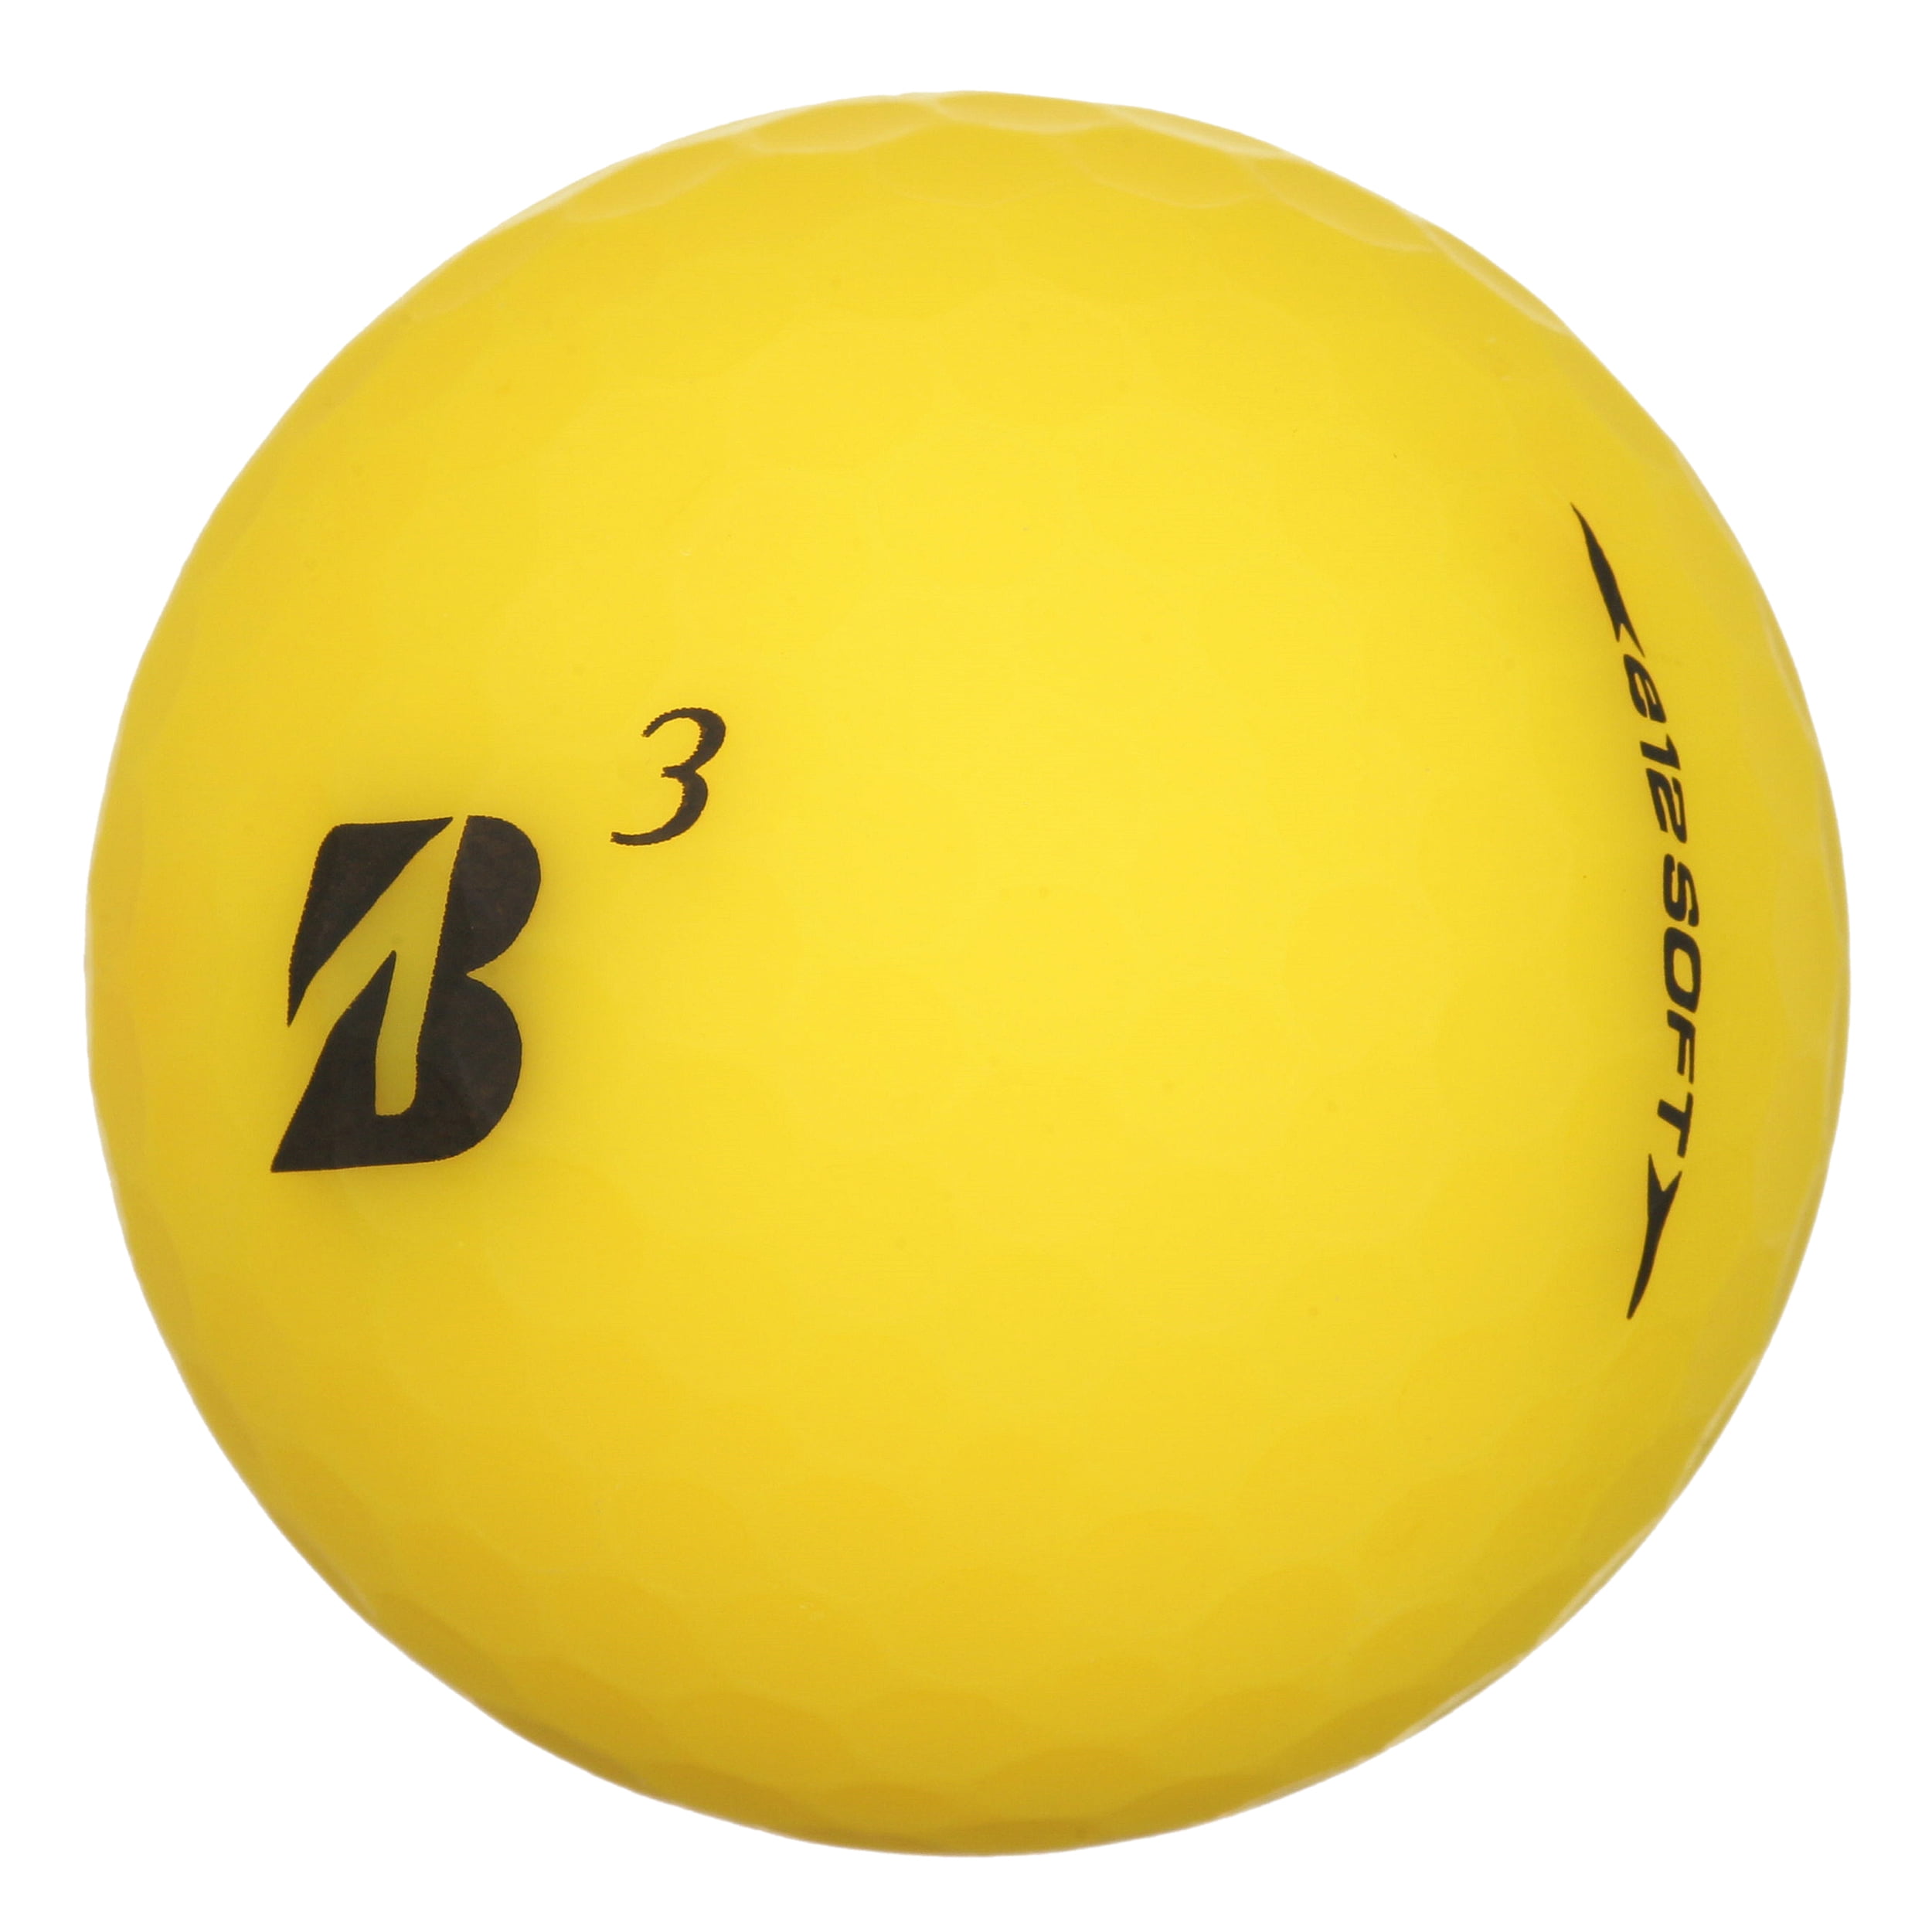  ARIDON- Golden Brushed Stainless Steel Golf Ball